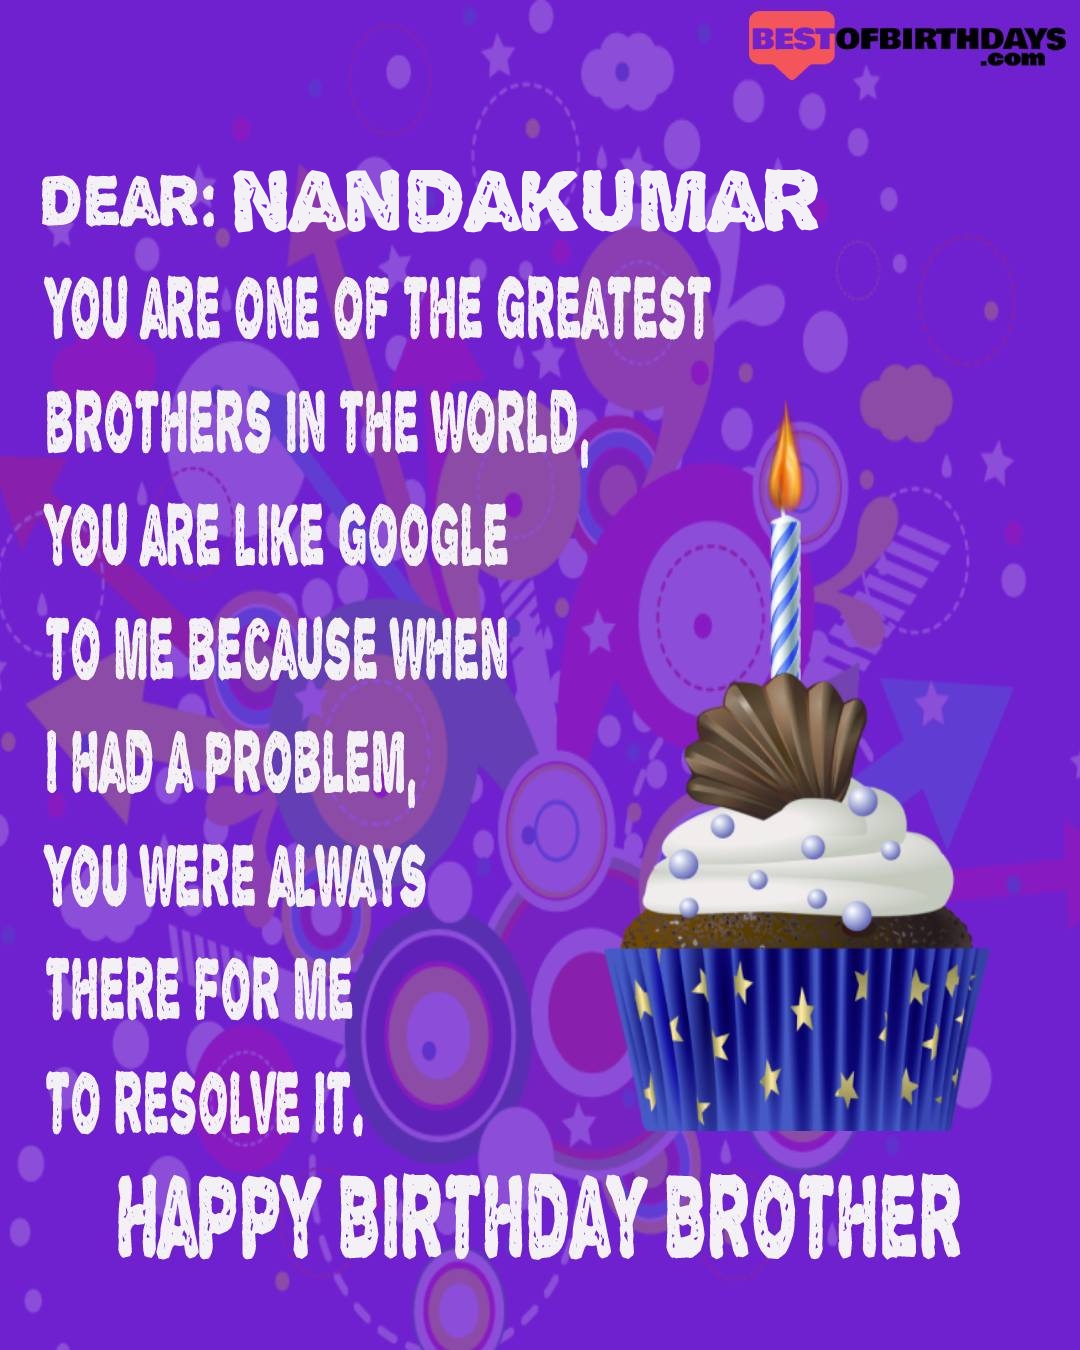 Happy birthday nandakumar bhai brother bro